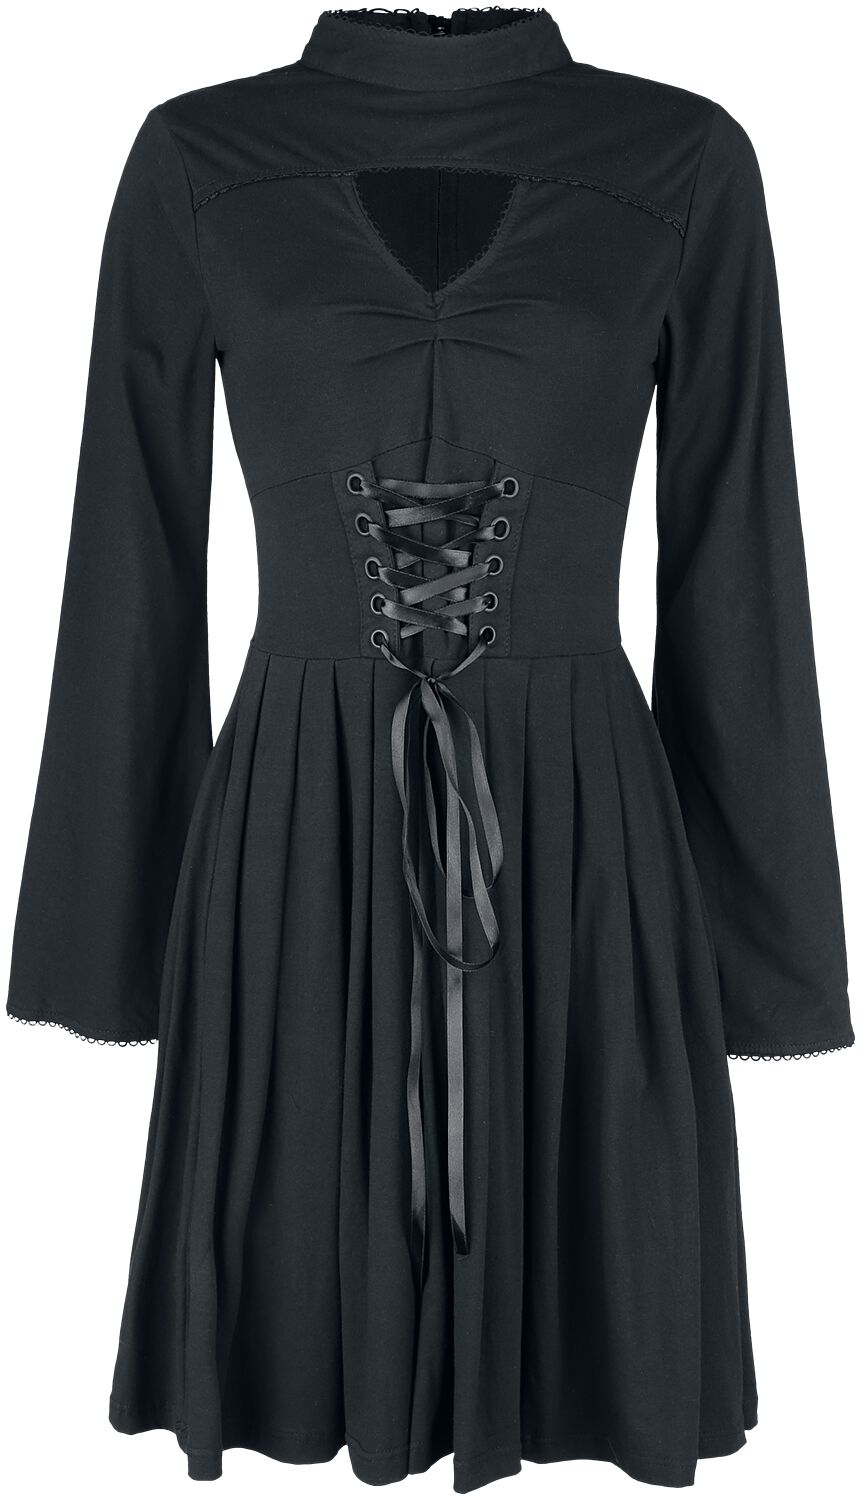 Poizen Industries - Gothic Kleid knielang - Stranger Dress - S bis 4XL - für Damen - Größe XL - schwarz